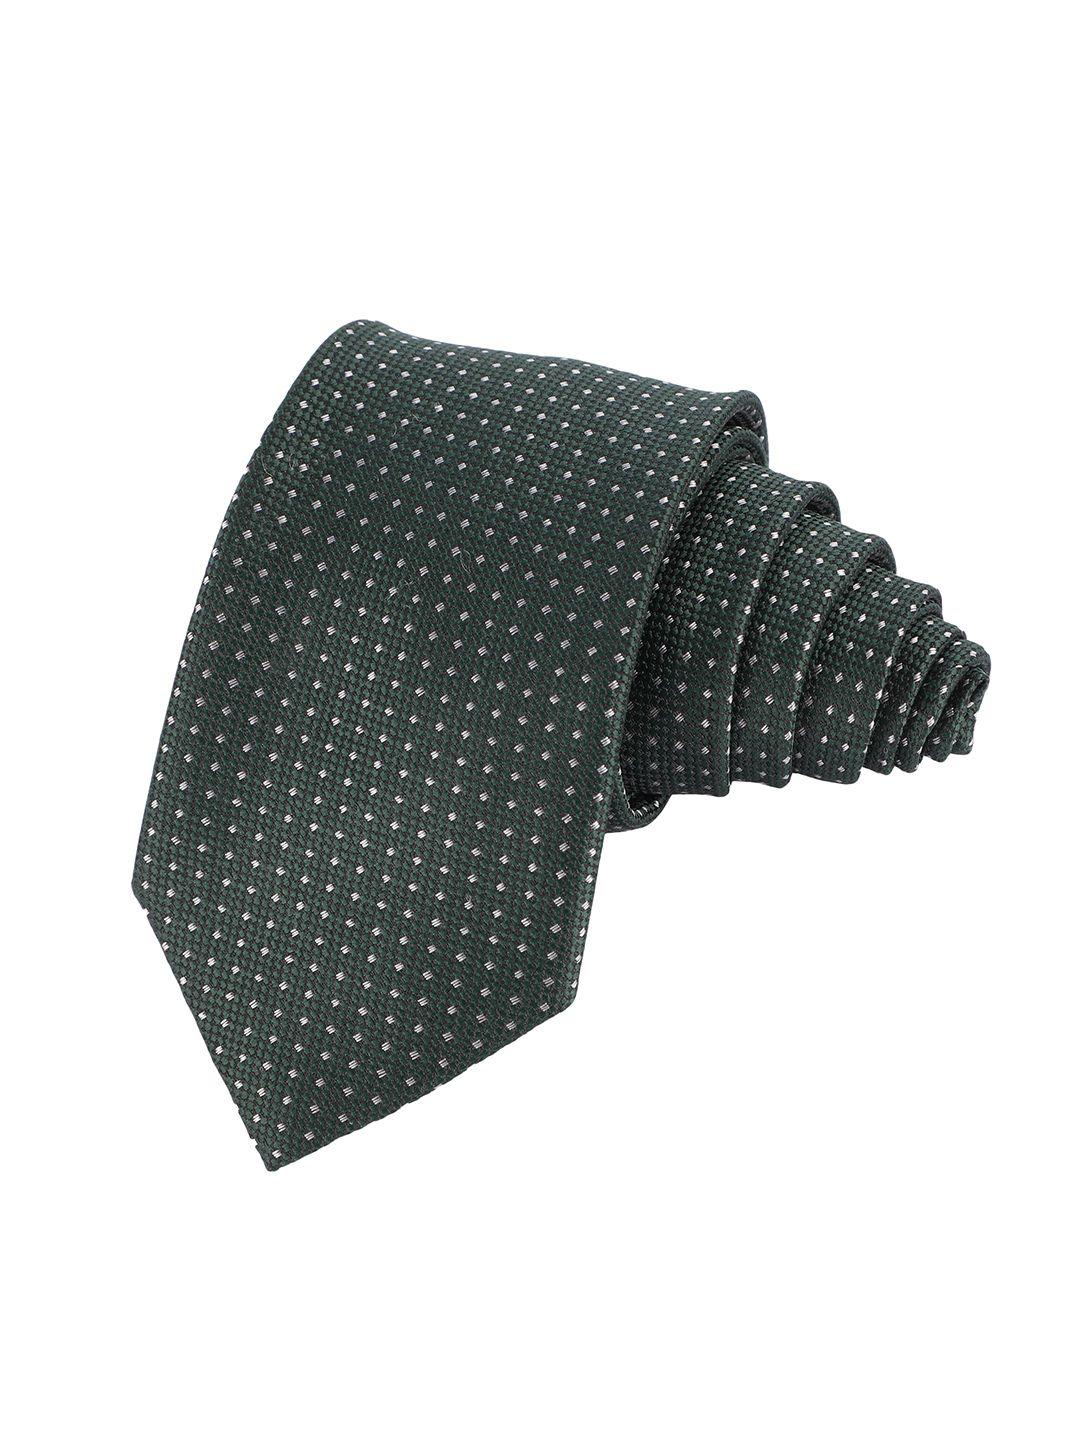 alvaro castagnino men green & grey woven design broad tie